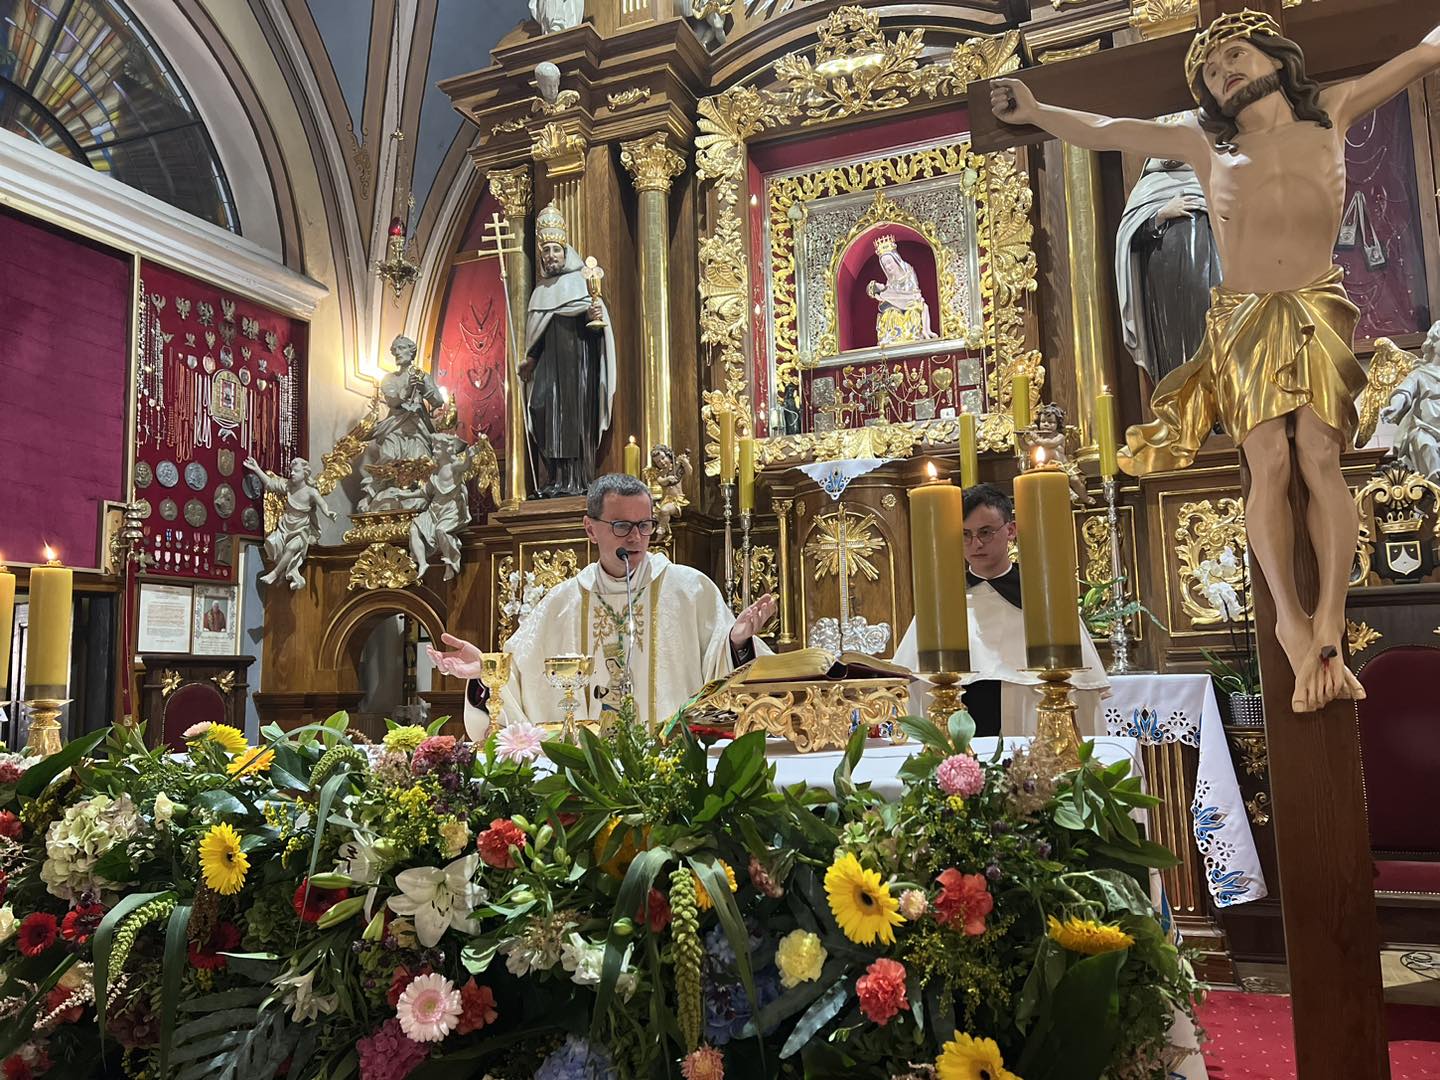 Ks. biskup Mirosław Milewski w Oborach: Maryja uczy ufać w cierpieniu 